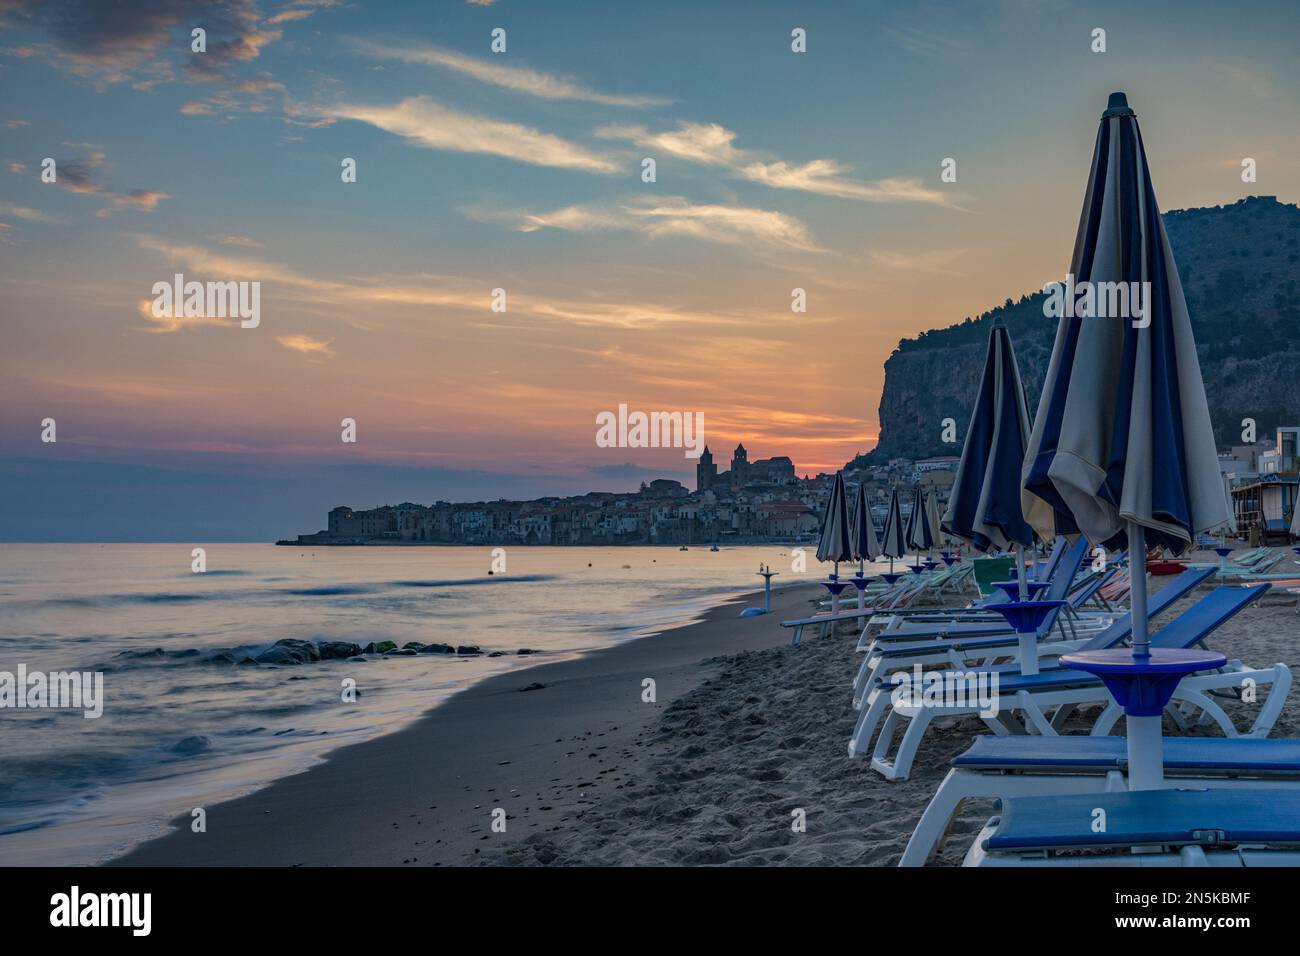 La plage de Cefalù avec la ville en arrière-plan aux premières lumières du matin, Sicile Banque D'Images